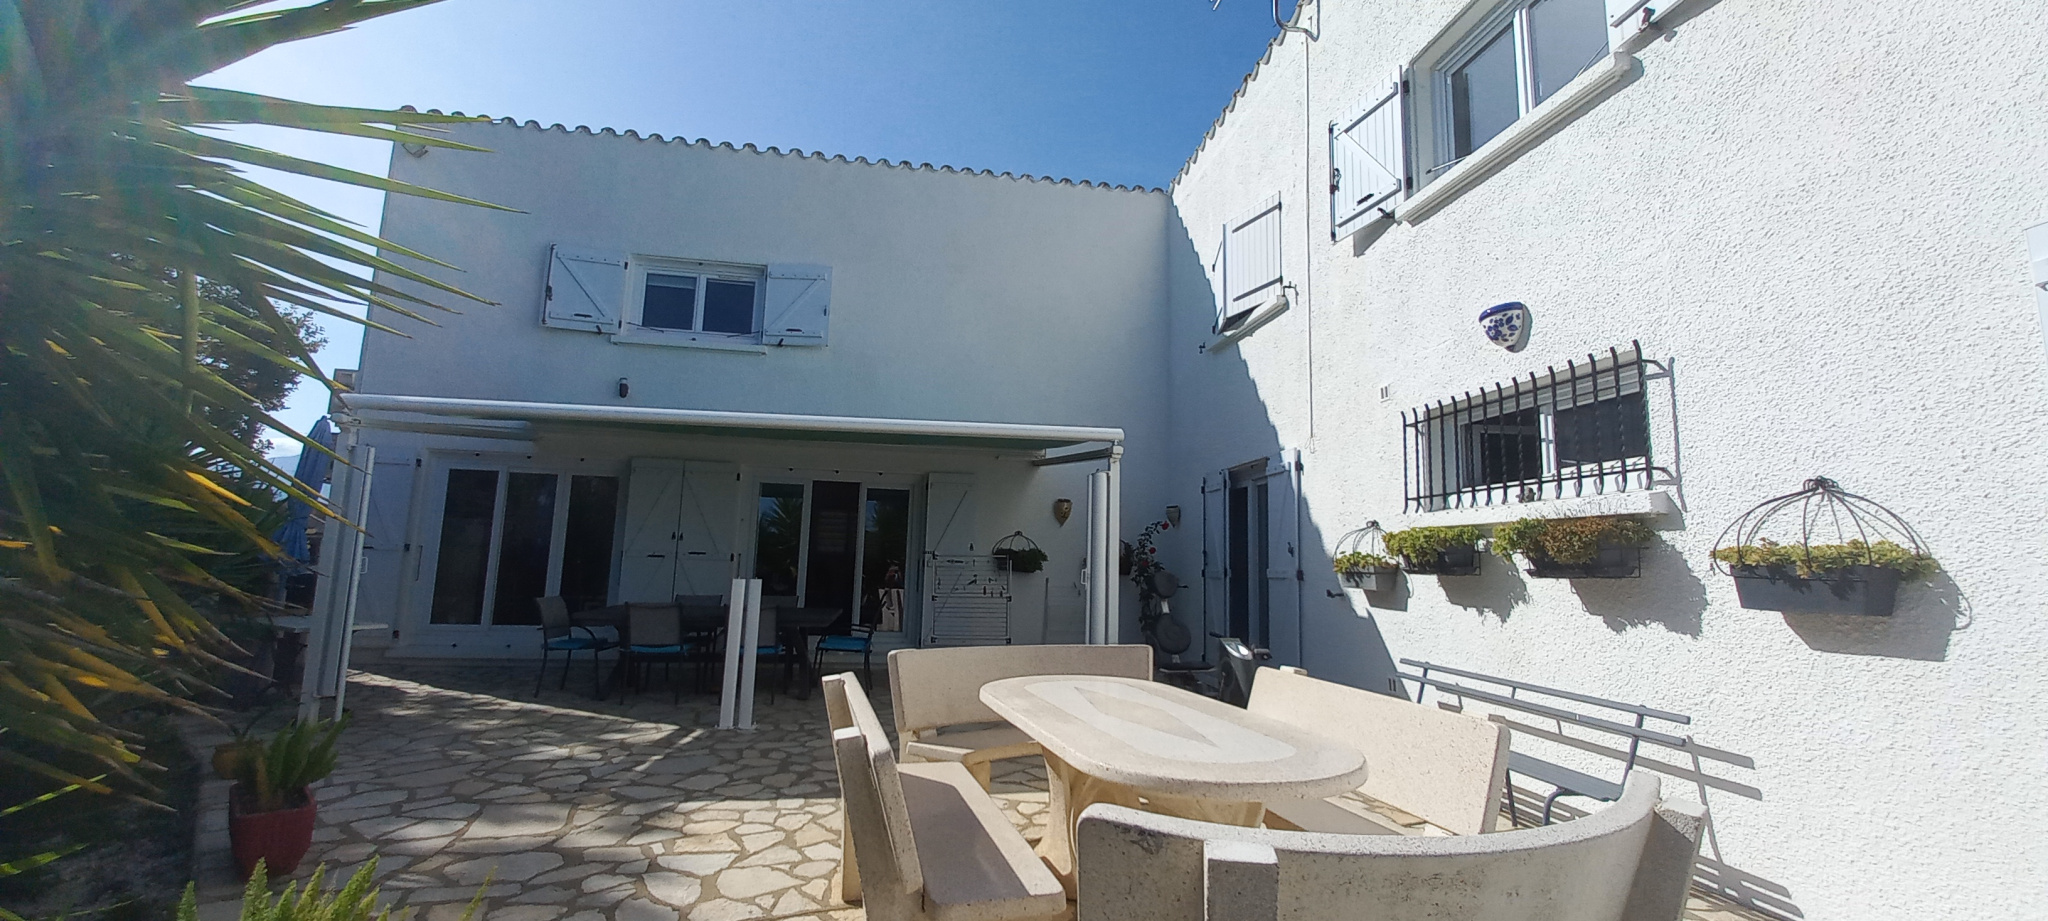 À vendre maison/villa de 220m2 à montescot (66200) - Photo 13'